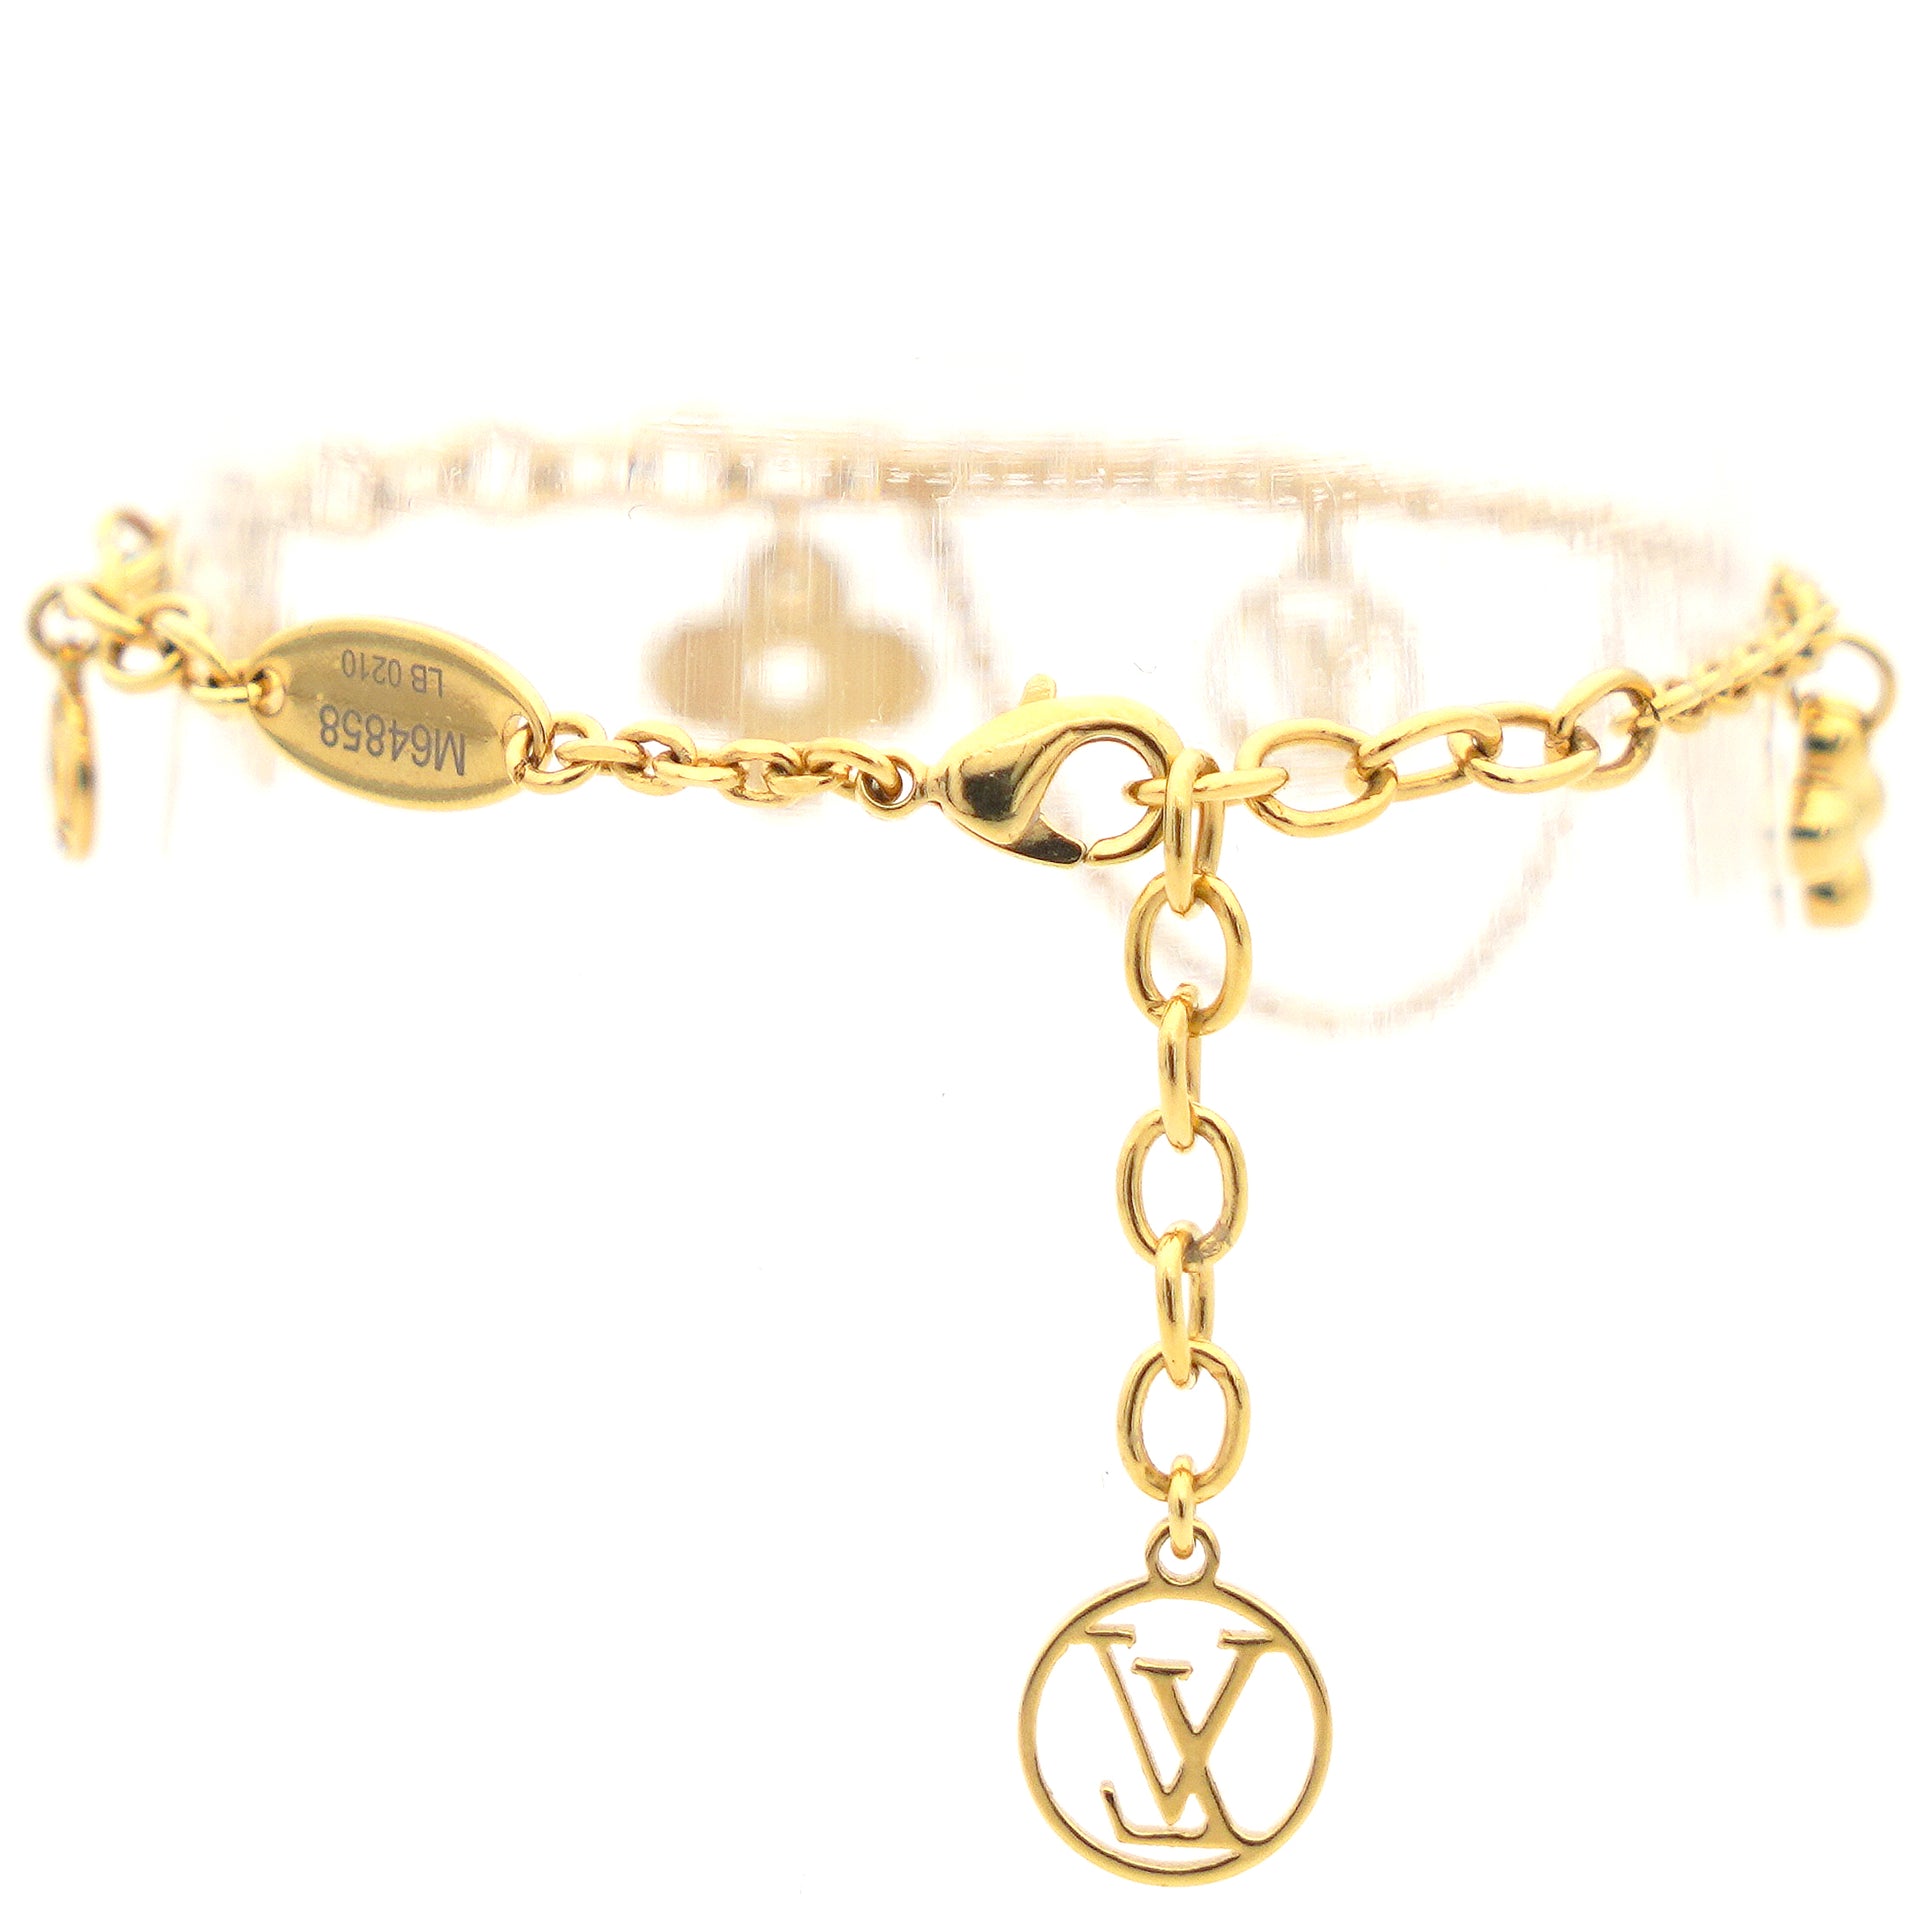 Mua Vòng Đeo Tay Nữ Louis Vuitton LV Blooming Supple Bracelet M64858 Màu  Vàng Gold  Louis Vuitton  Mua tại Vua Hàng Hiệu h050284